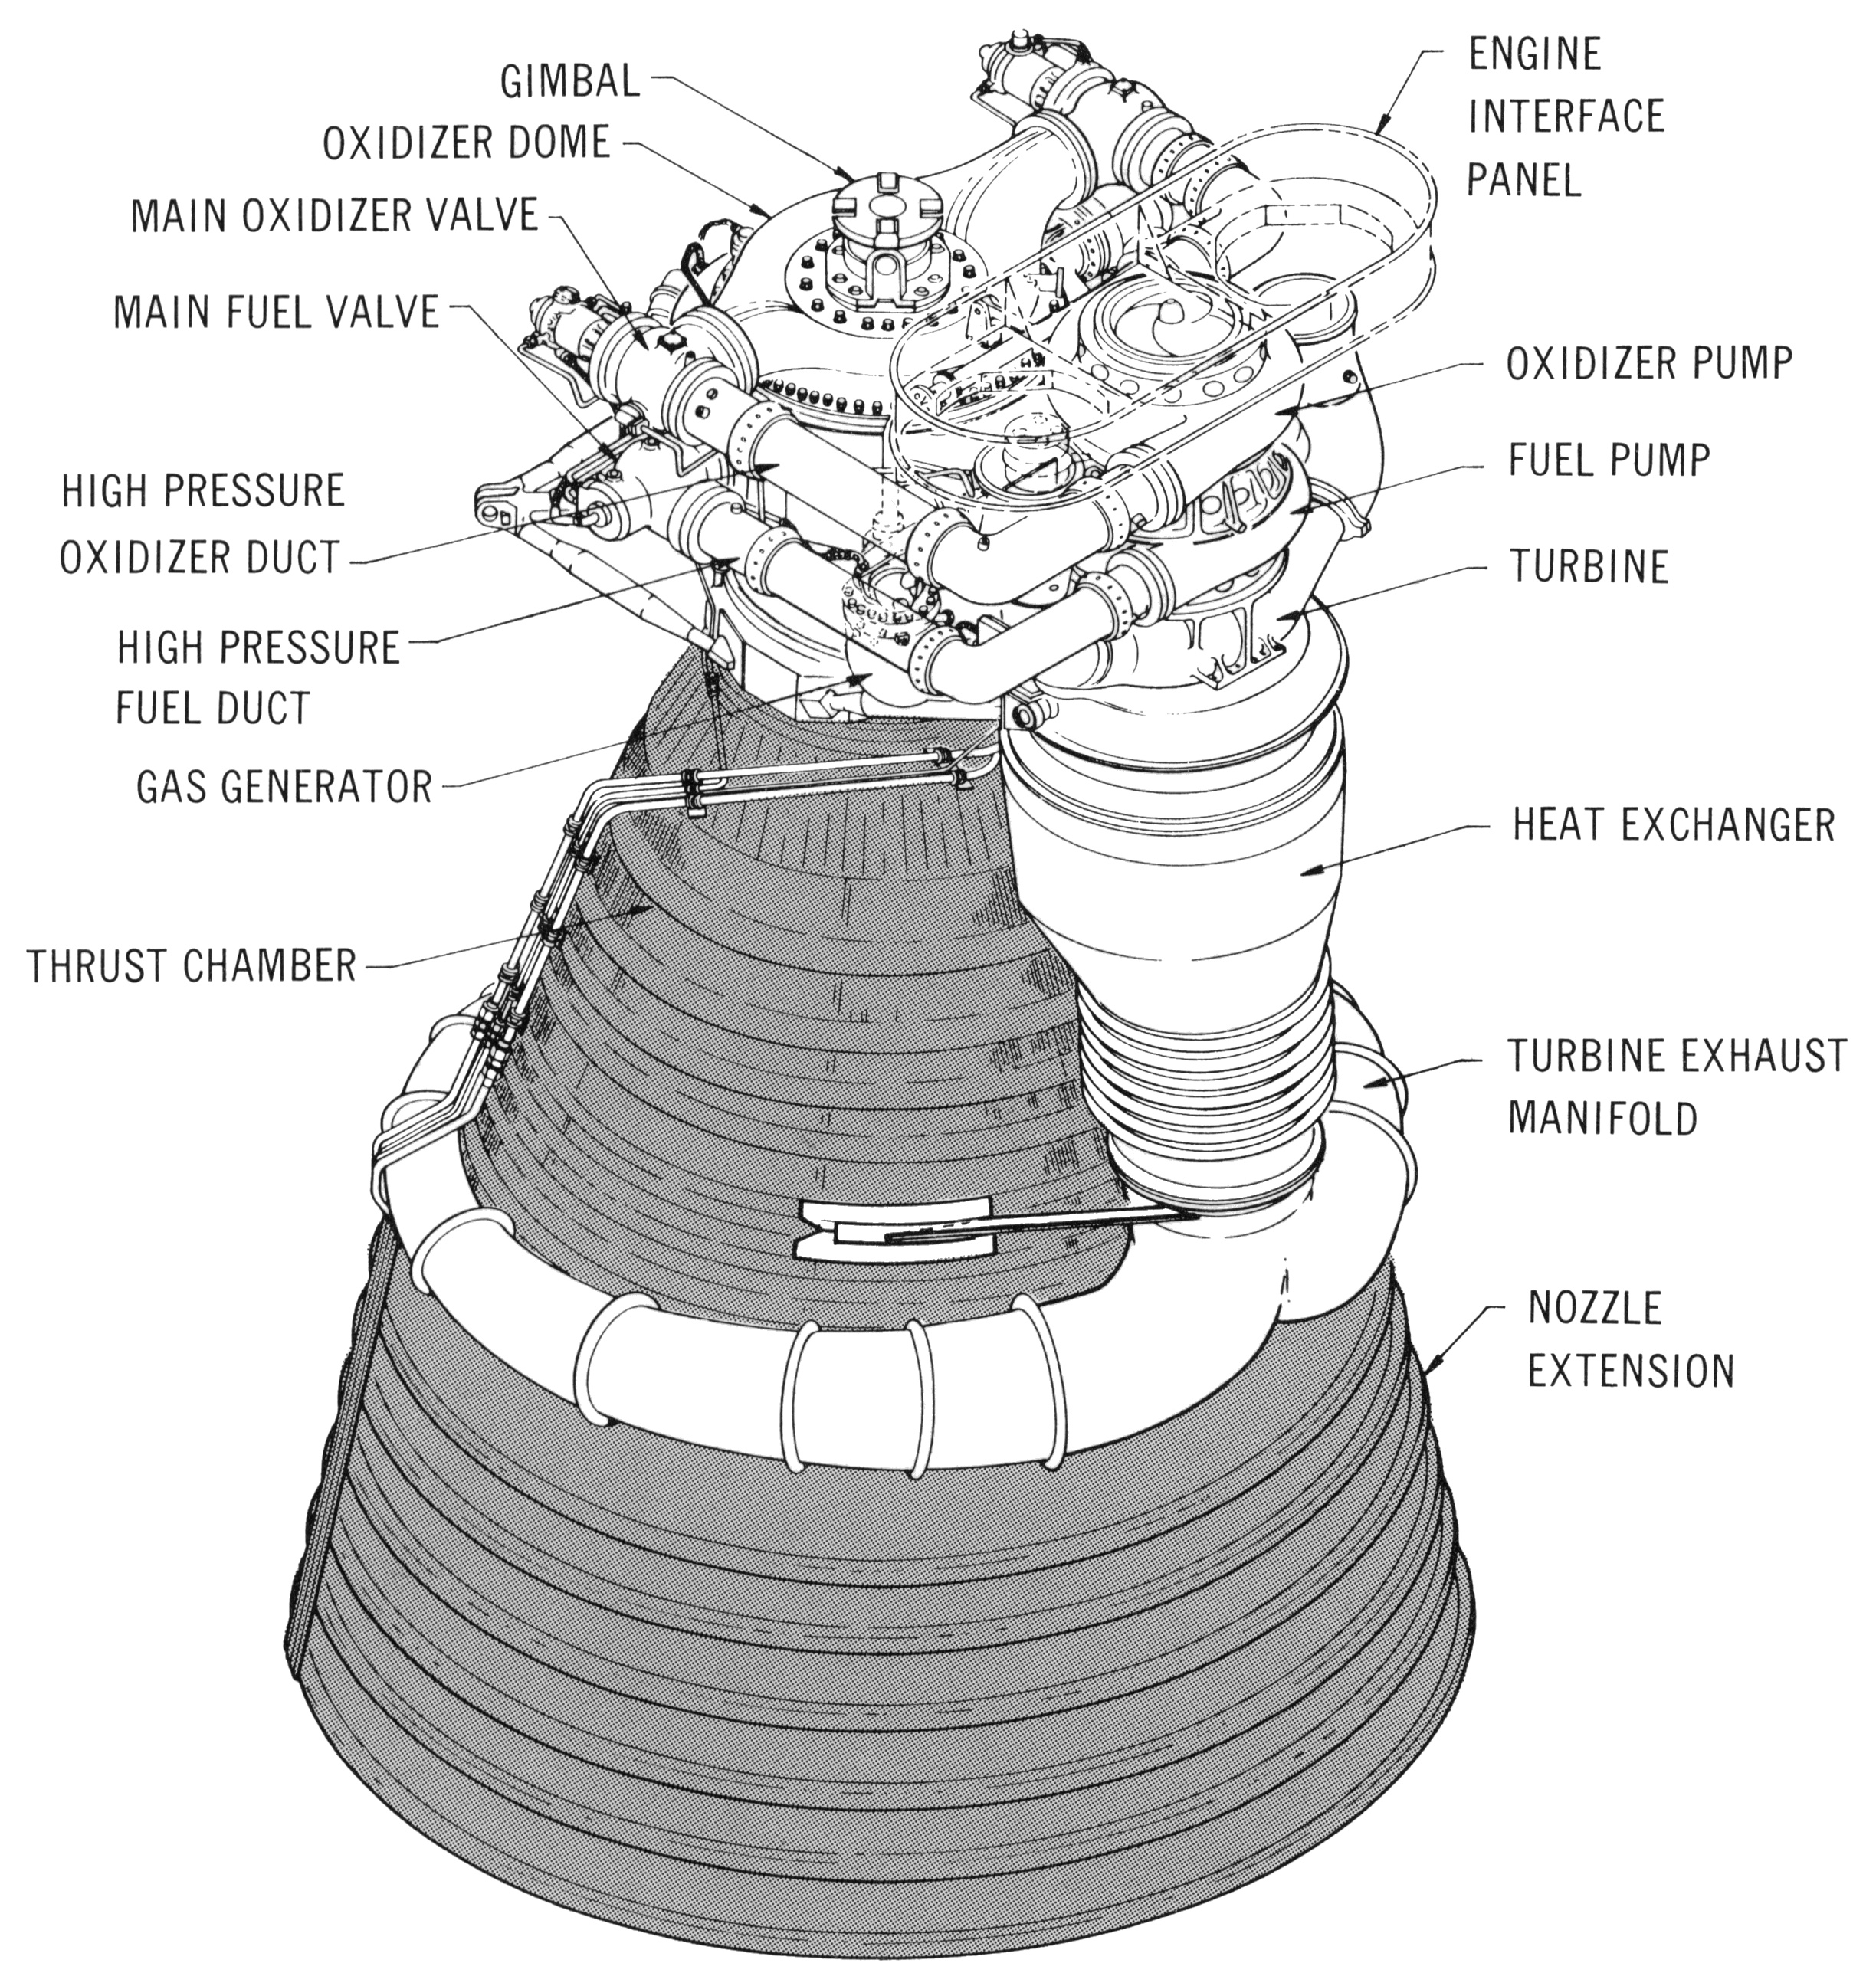 rocket engine drawings